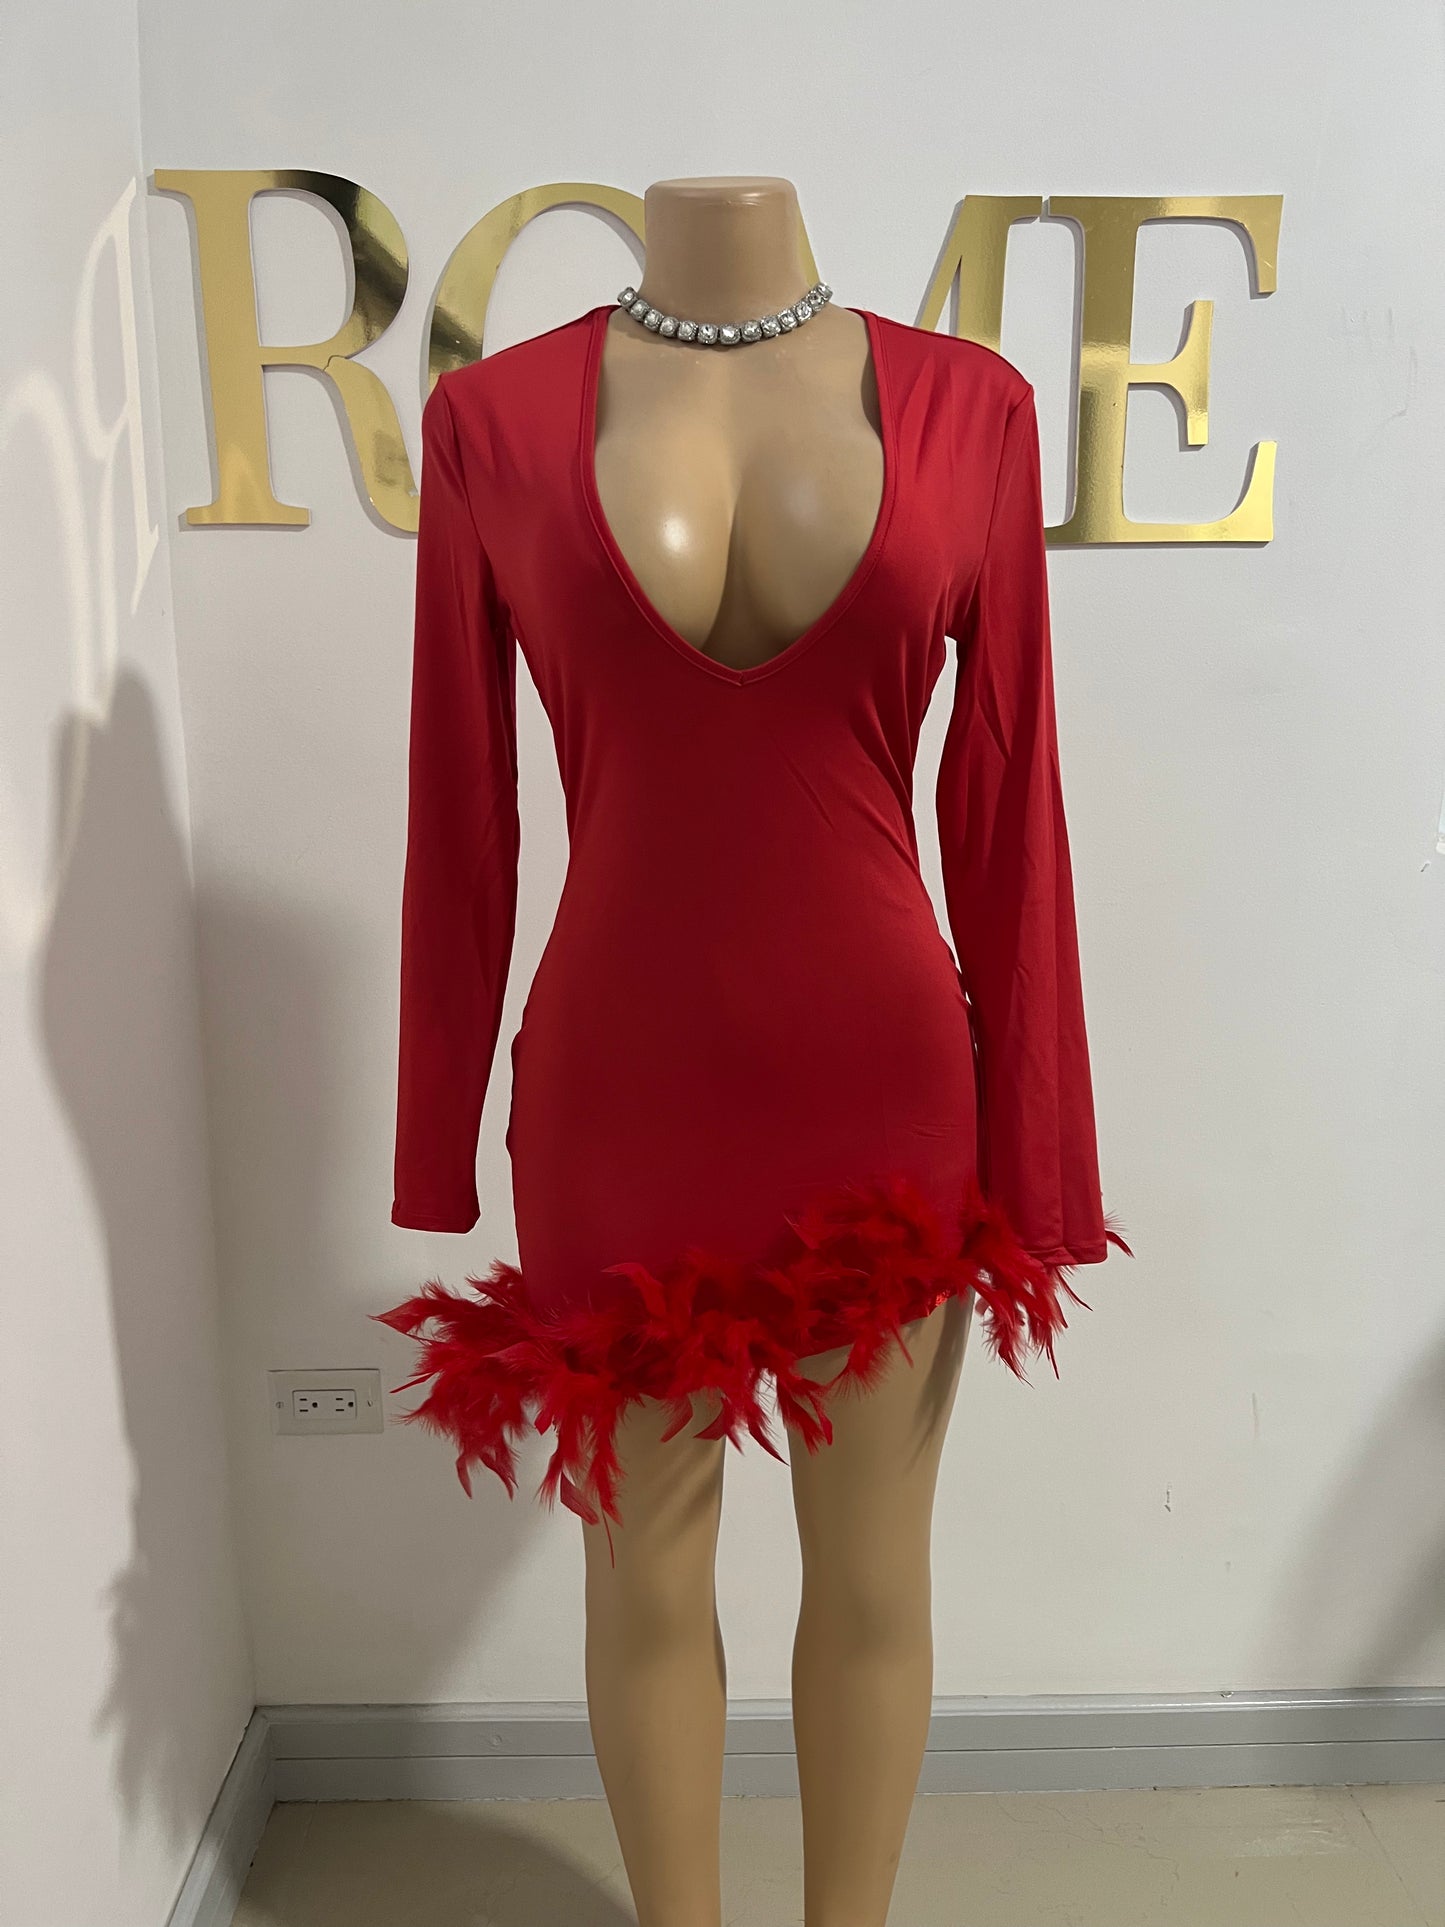 Brittany V Slay Dress (Red)